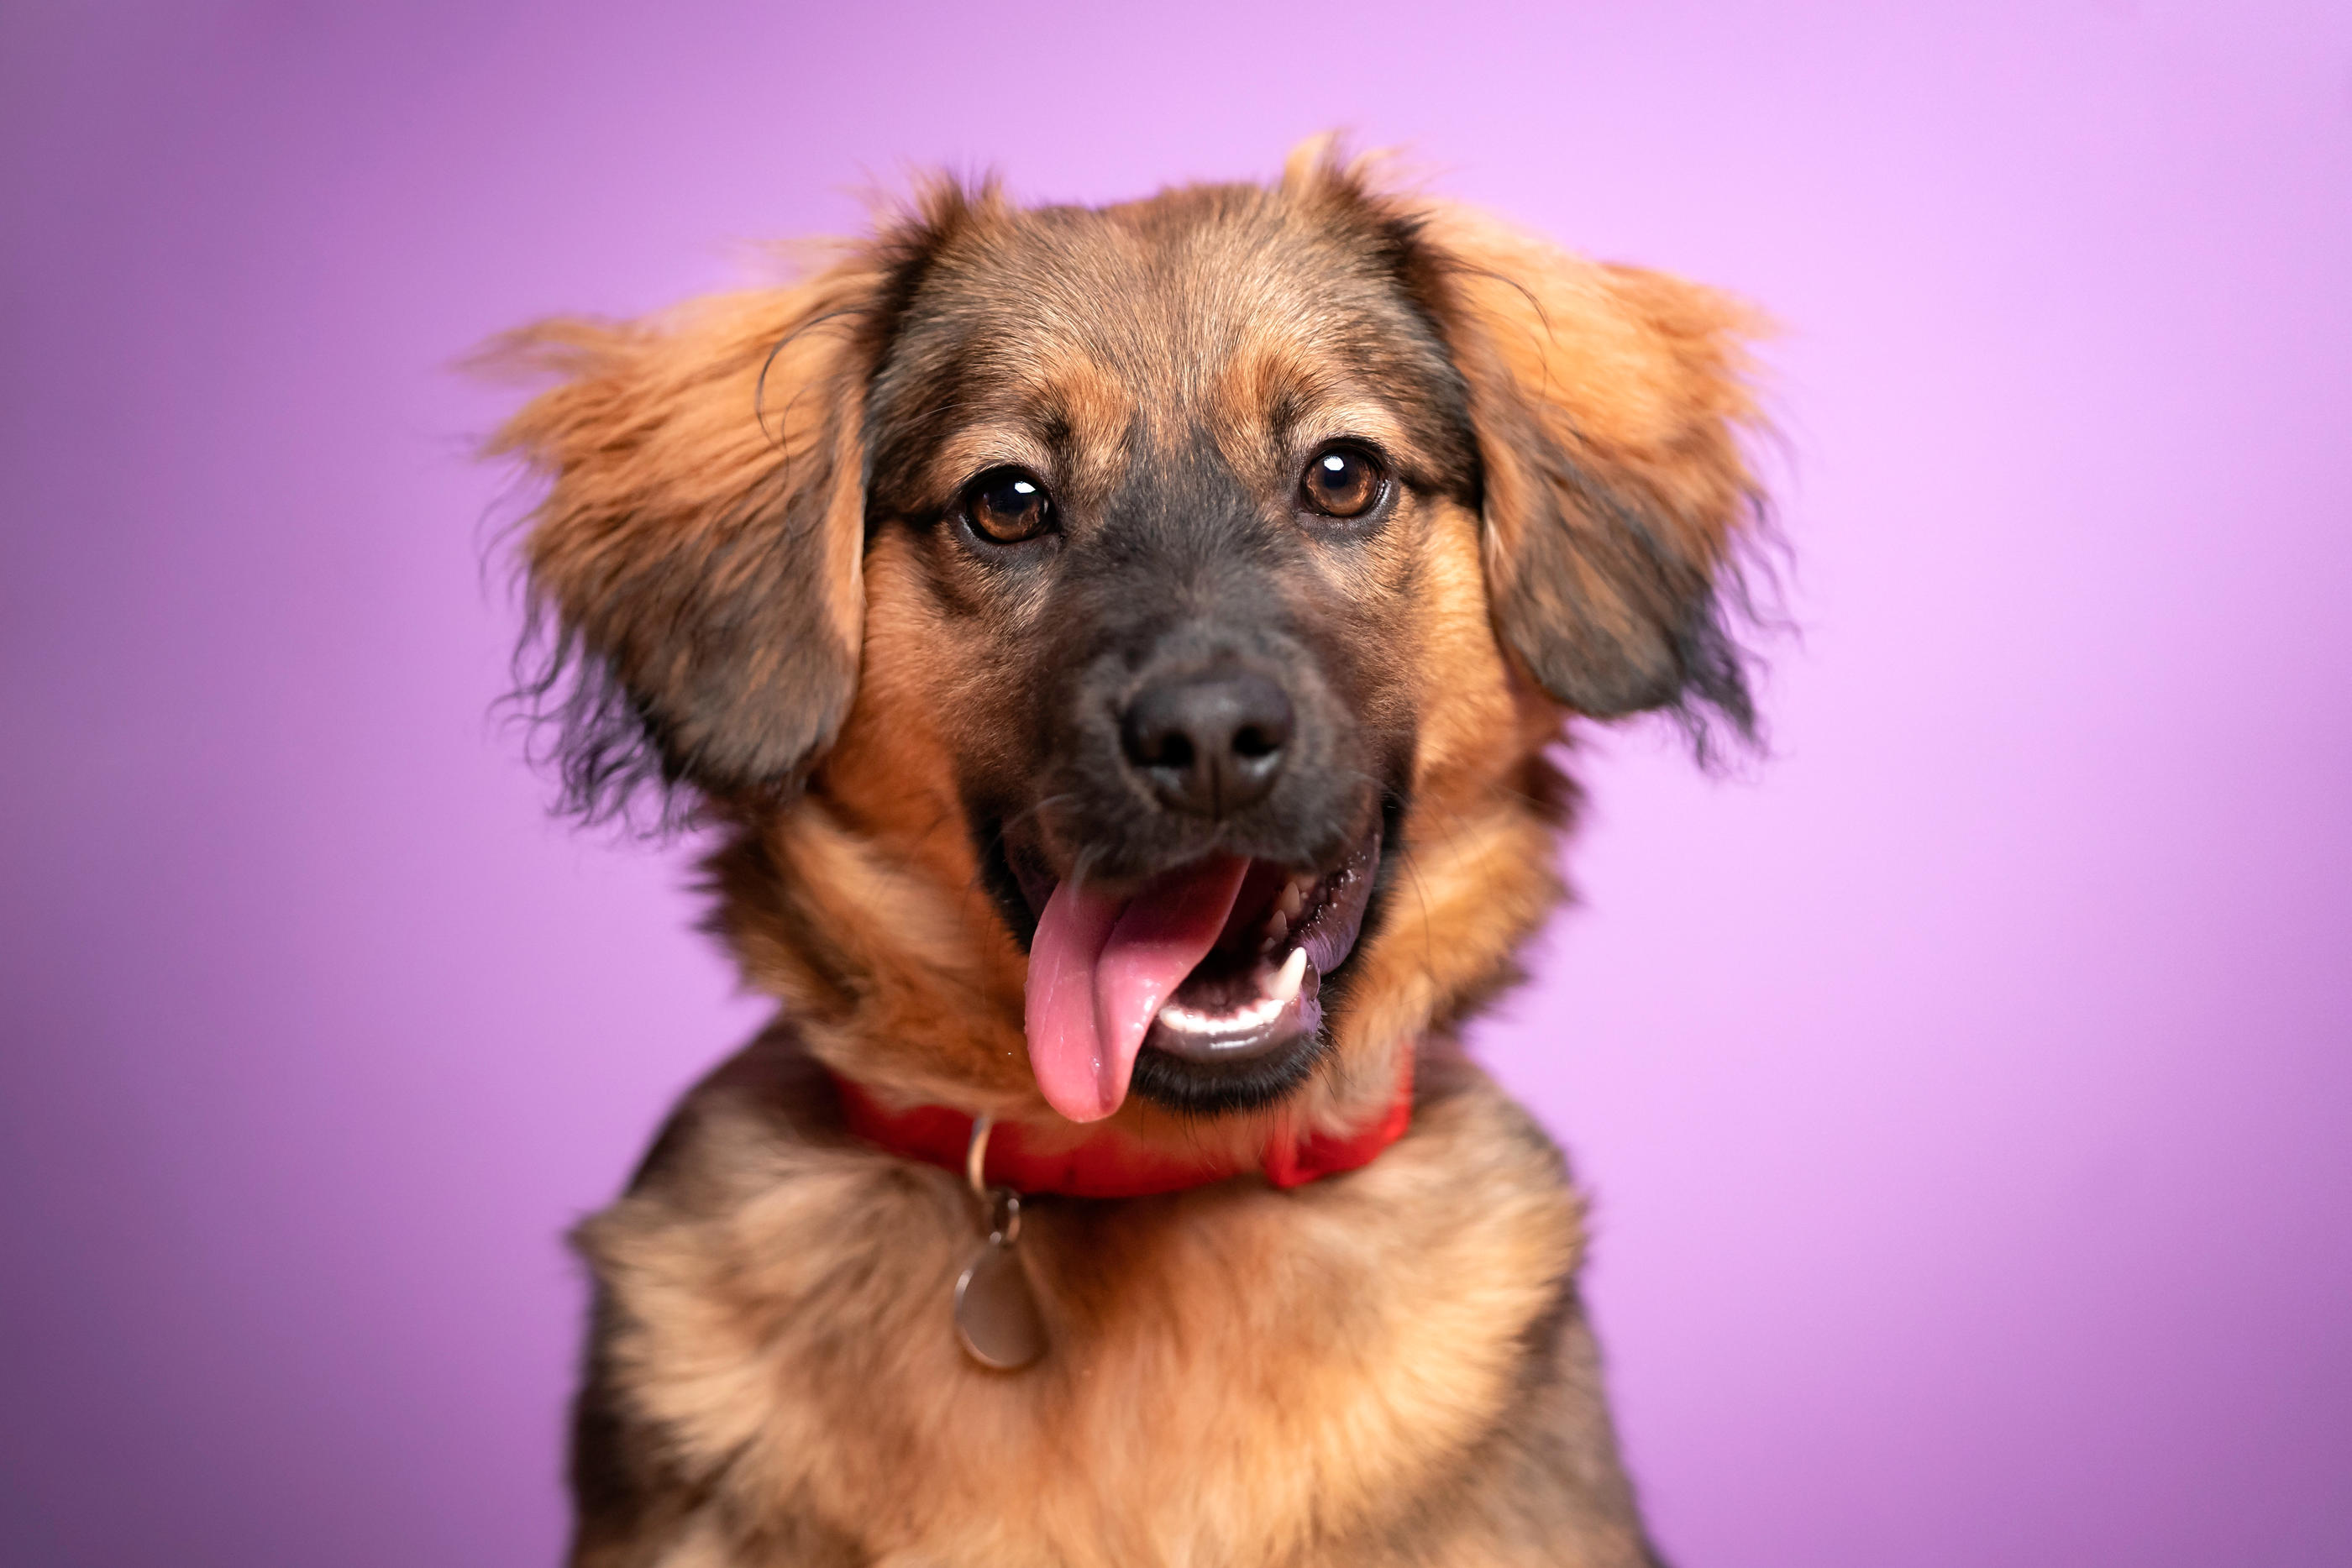 Les chiens aux yeux foncés sont perçus comme plus amicaux par l'homme, selon une étude réalisée par des chercheurs à Tokyo. iStock/Anita Kot